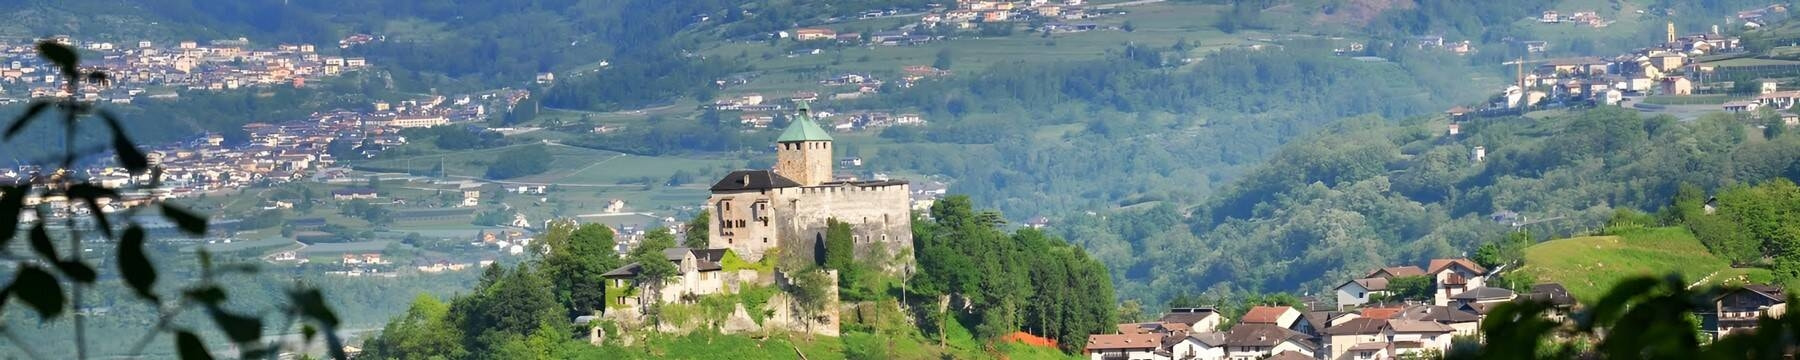 Immagine homepage Castel Ivano - Sconosciuto - Comune di Castel Ivano